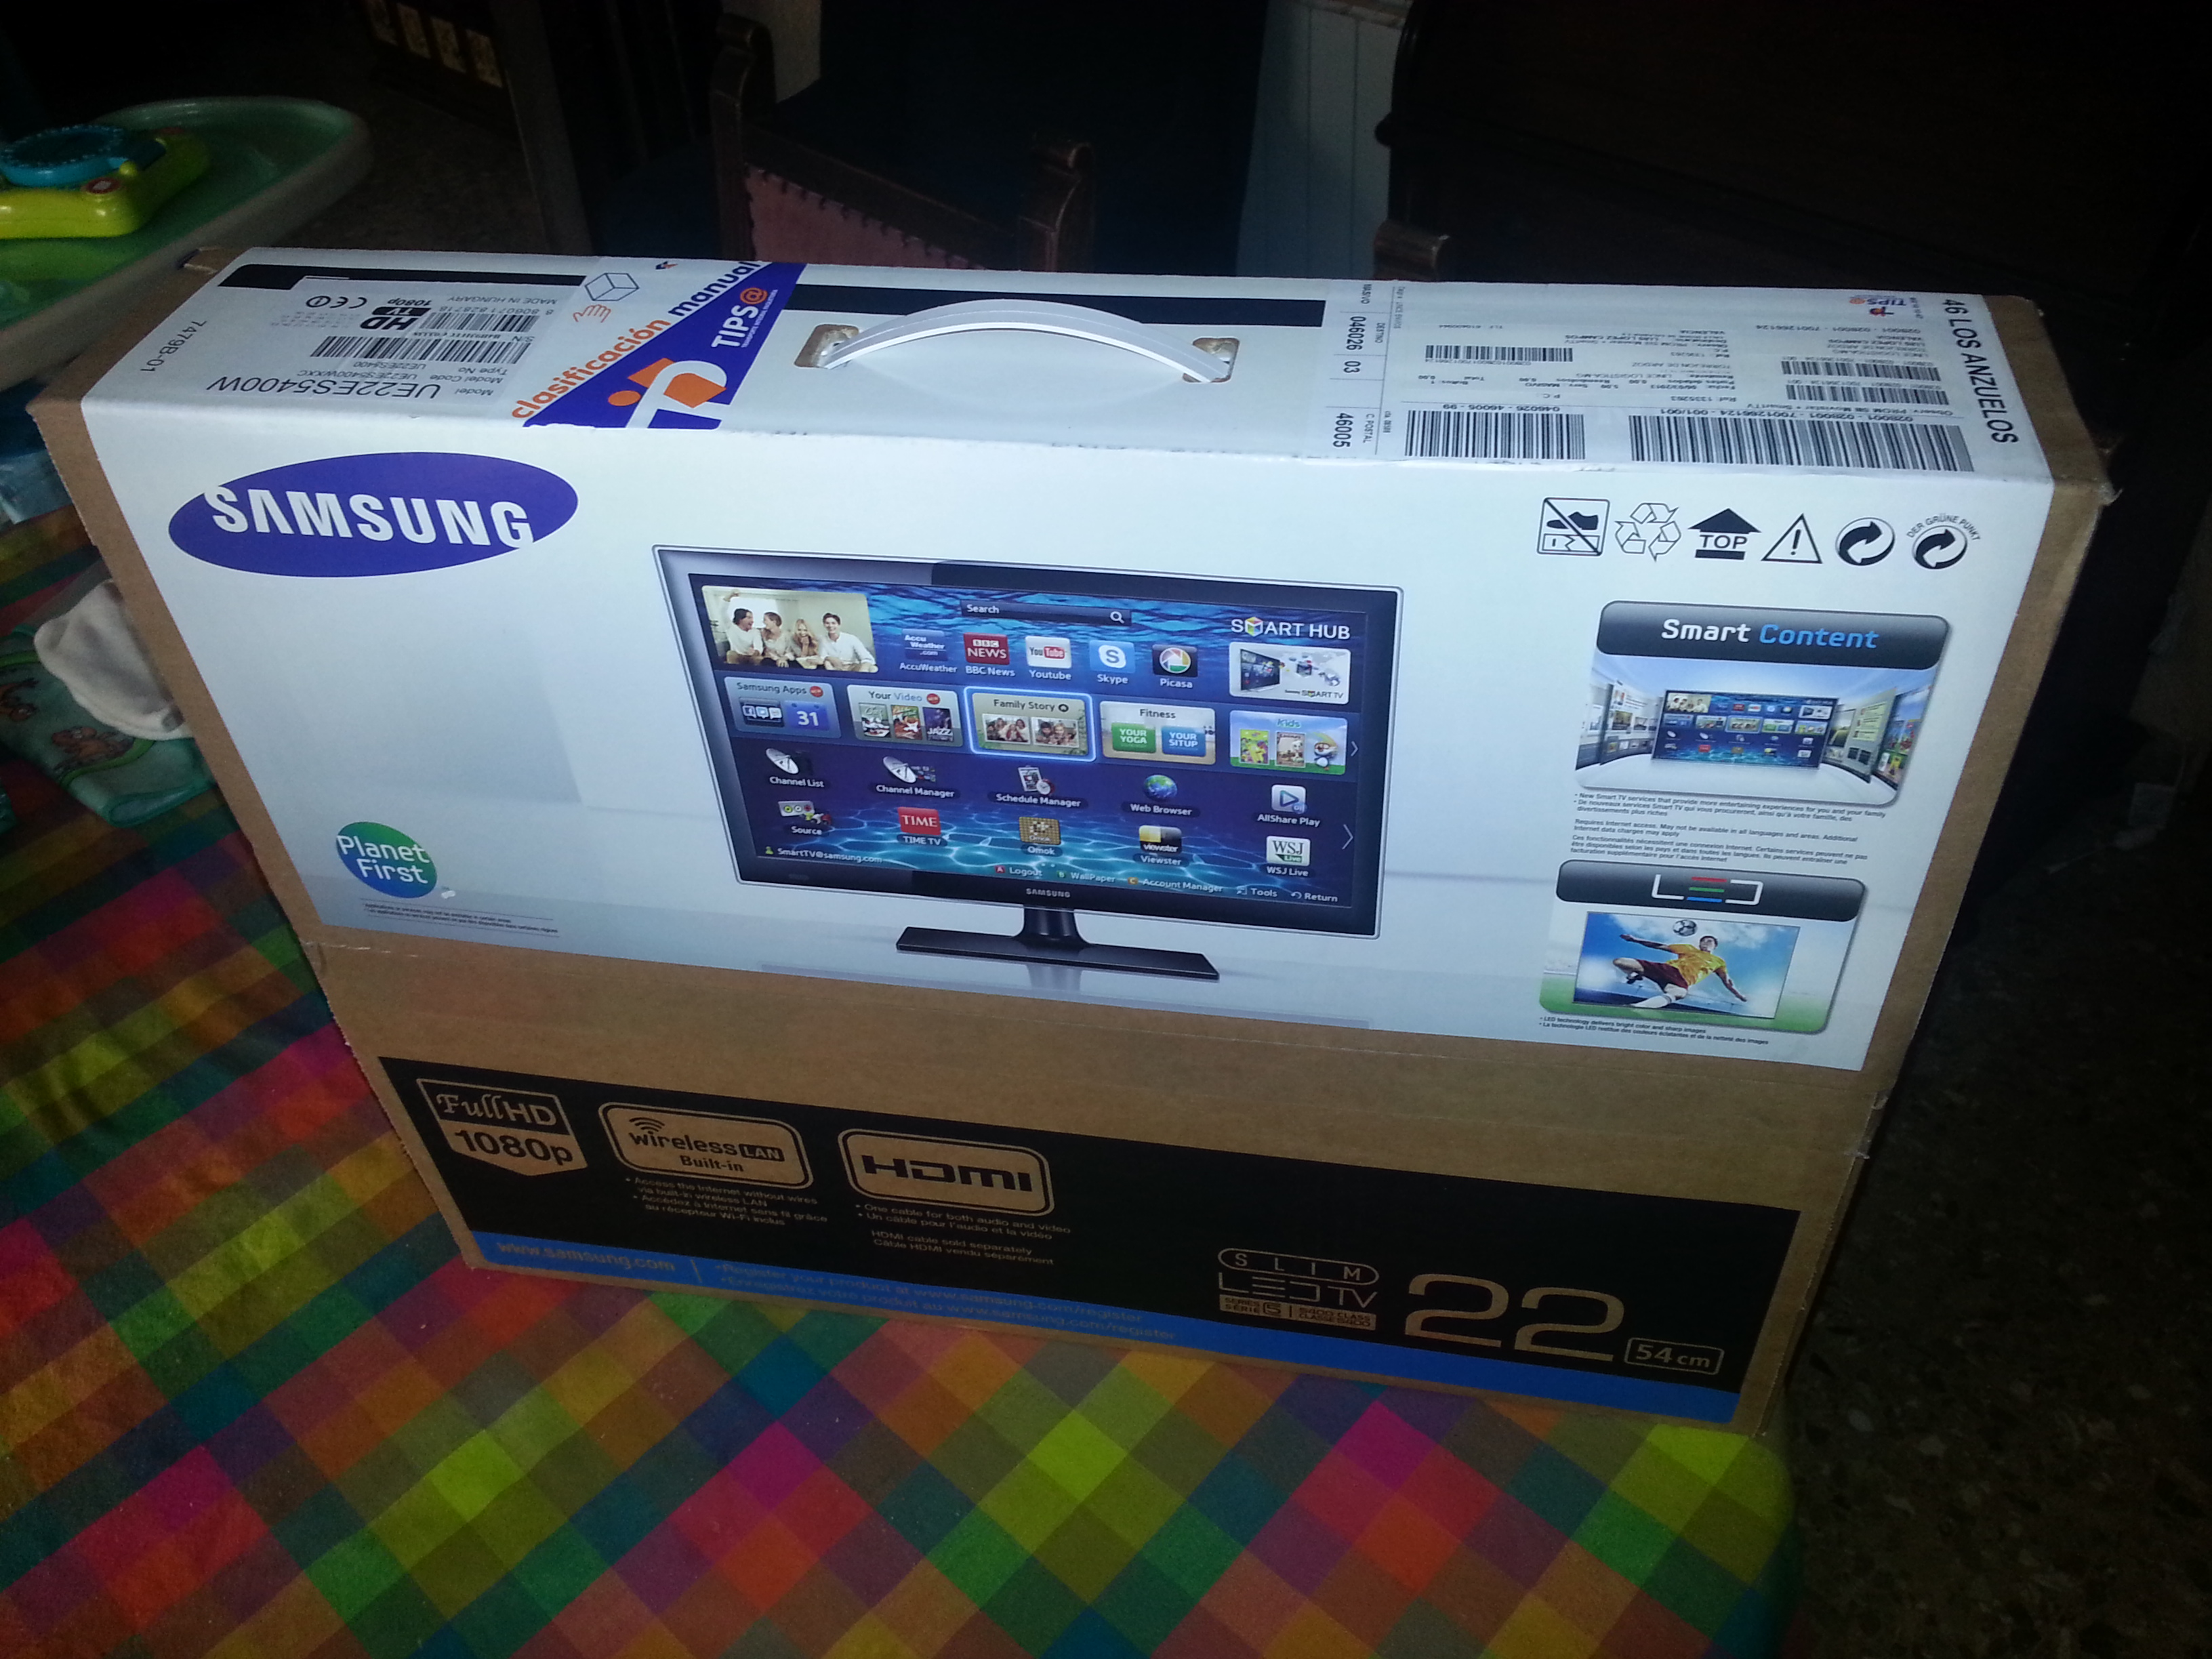 Solucionado: Regalo smart TV con Samsung galaxy s3 - Comunidad Movistar